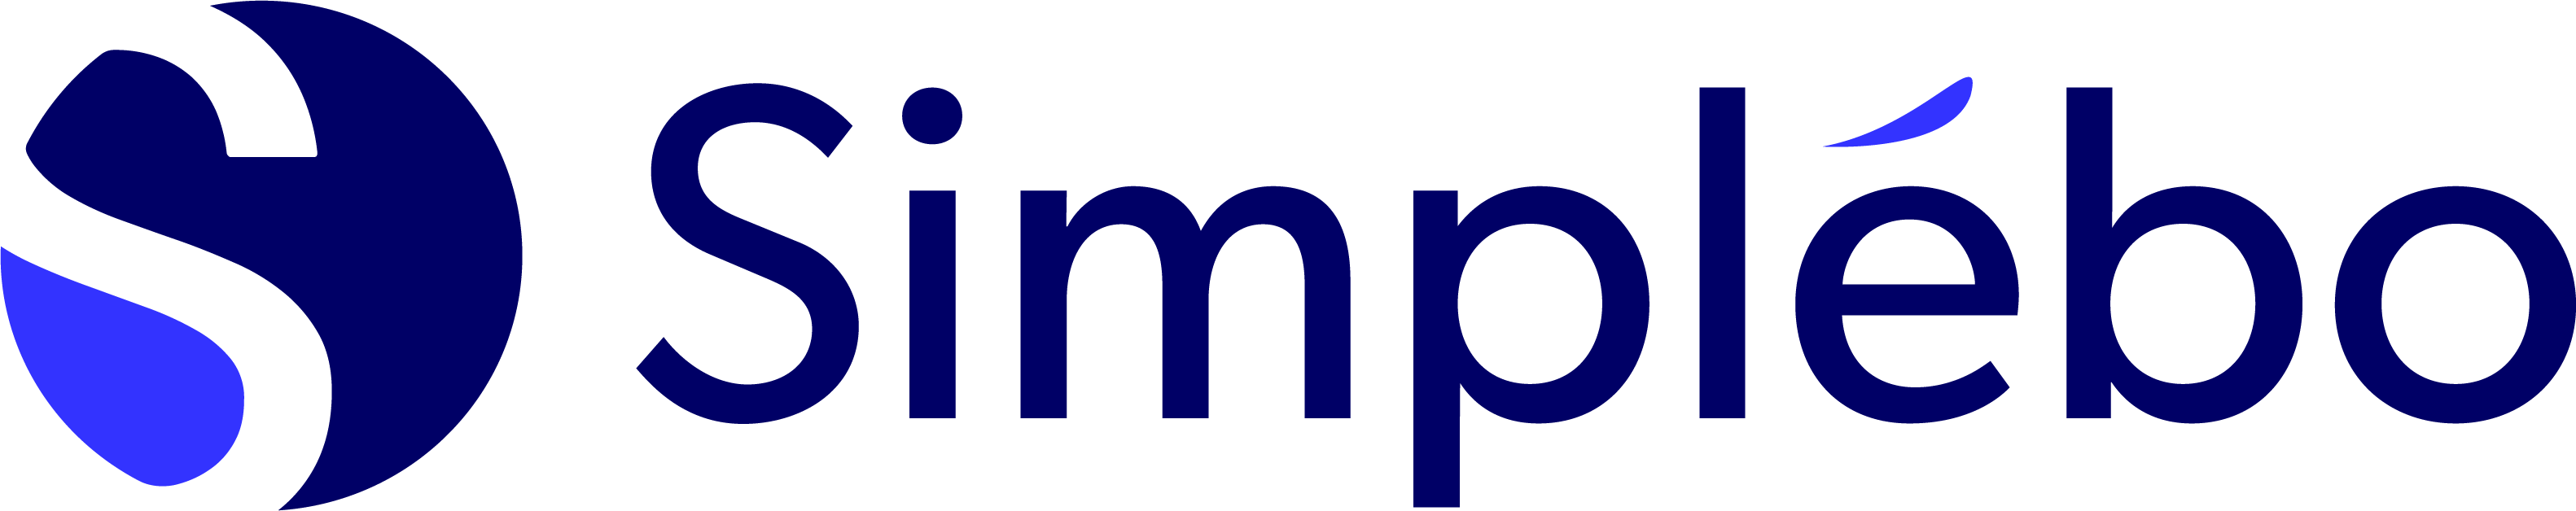 Logo Présence locale Votre site internet Simplébo